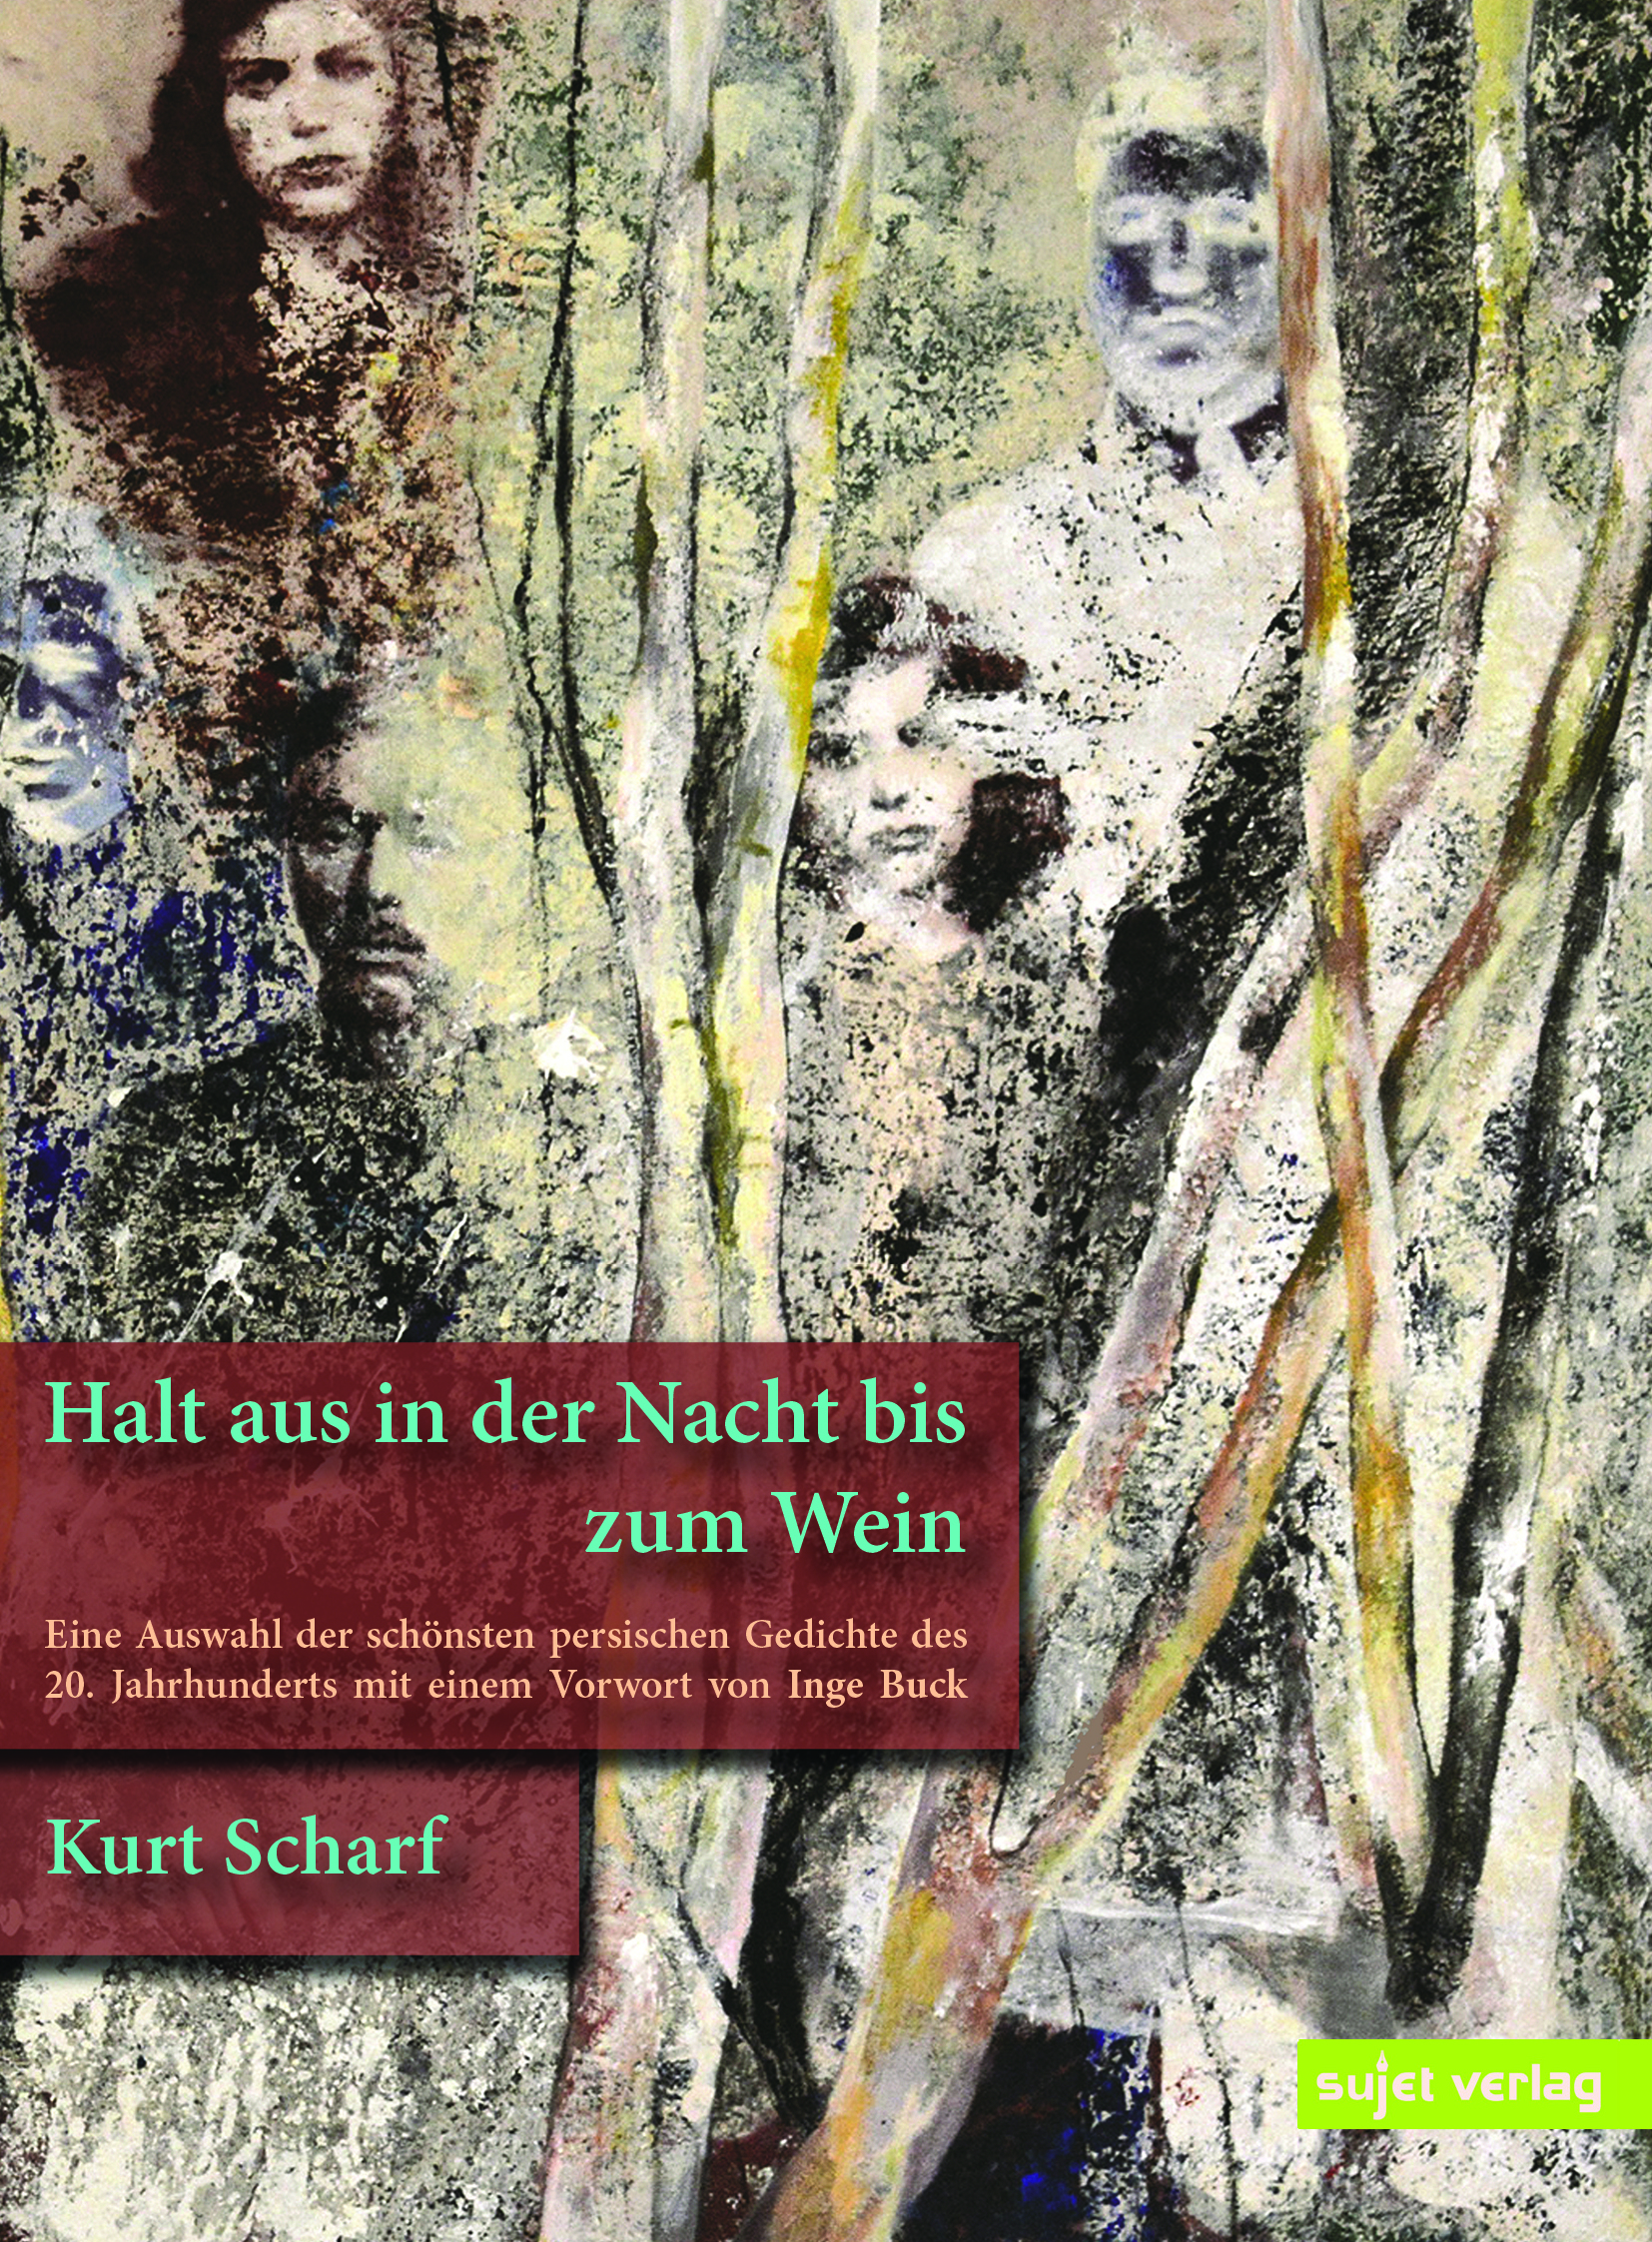 http://sujetverlag.de/wp-content/uploads/2019/08/Cover-Halt-aus-vorne.jpg